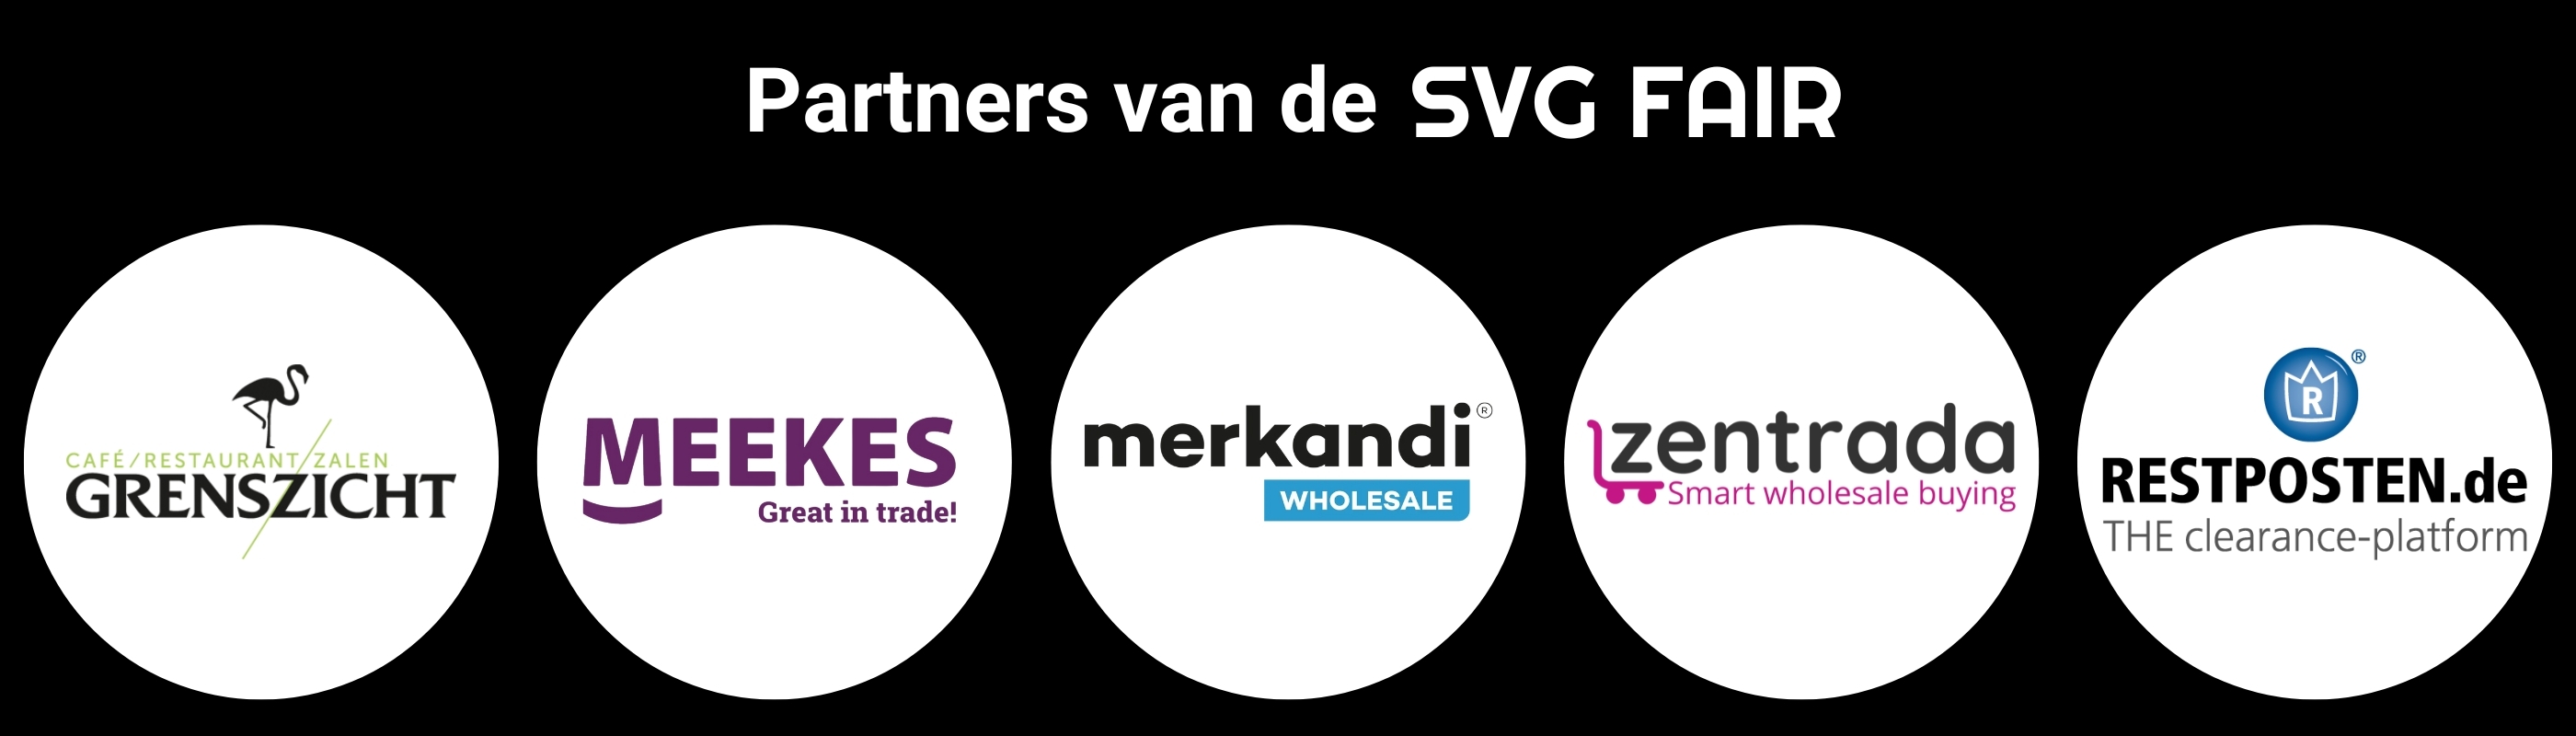 SVG Fair partnersa 1